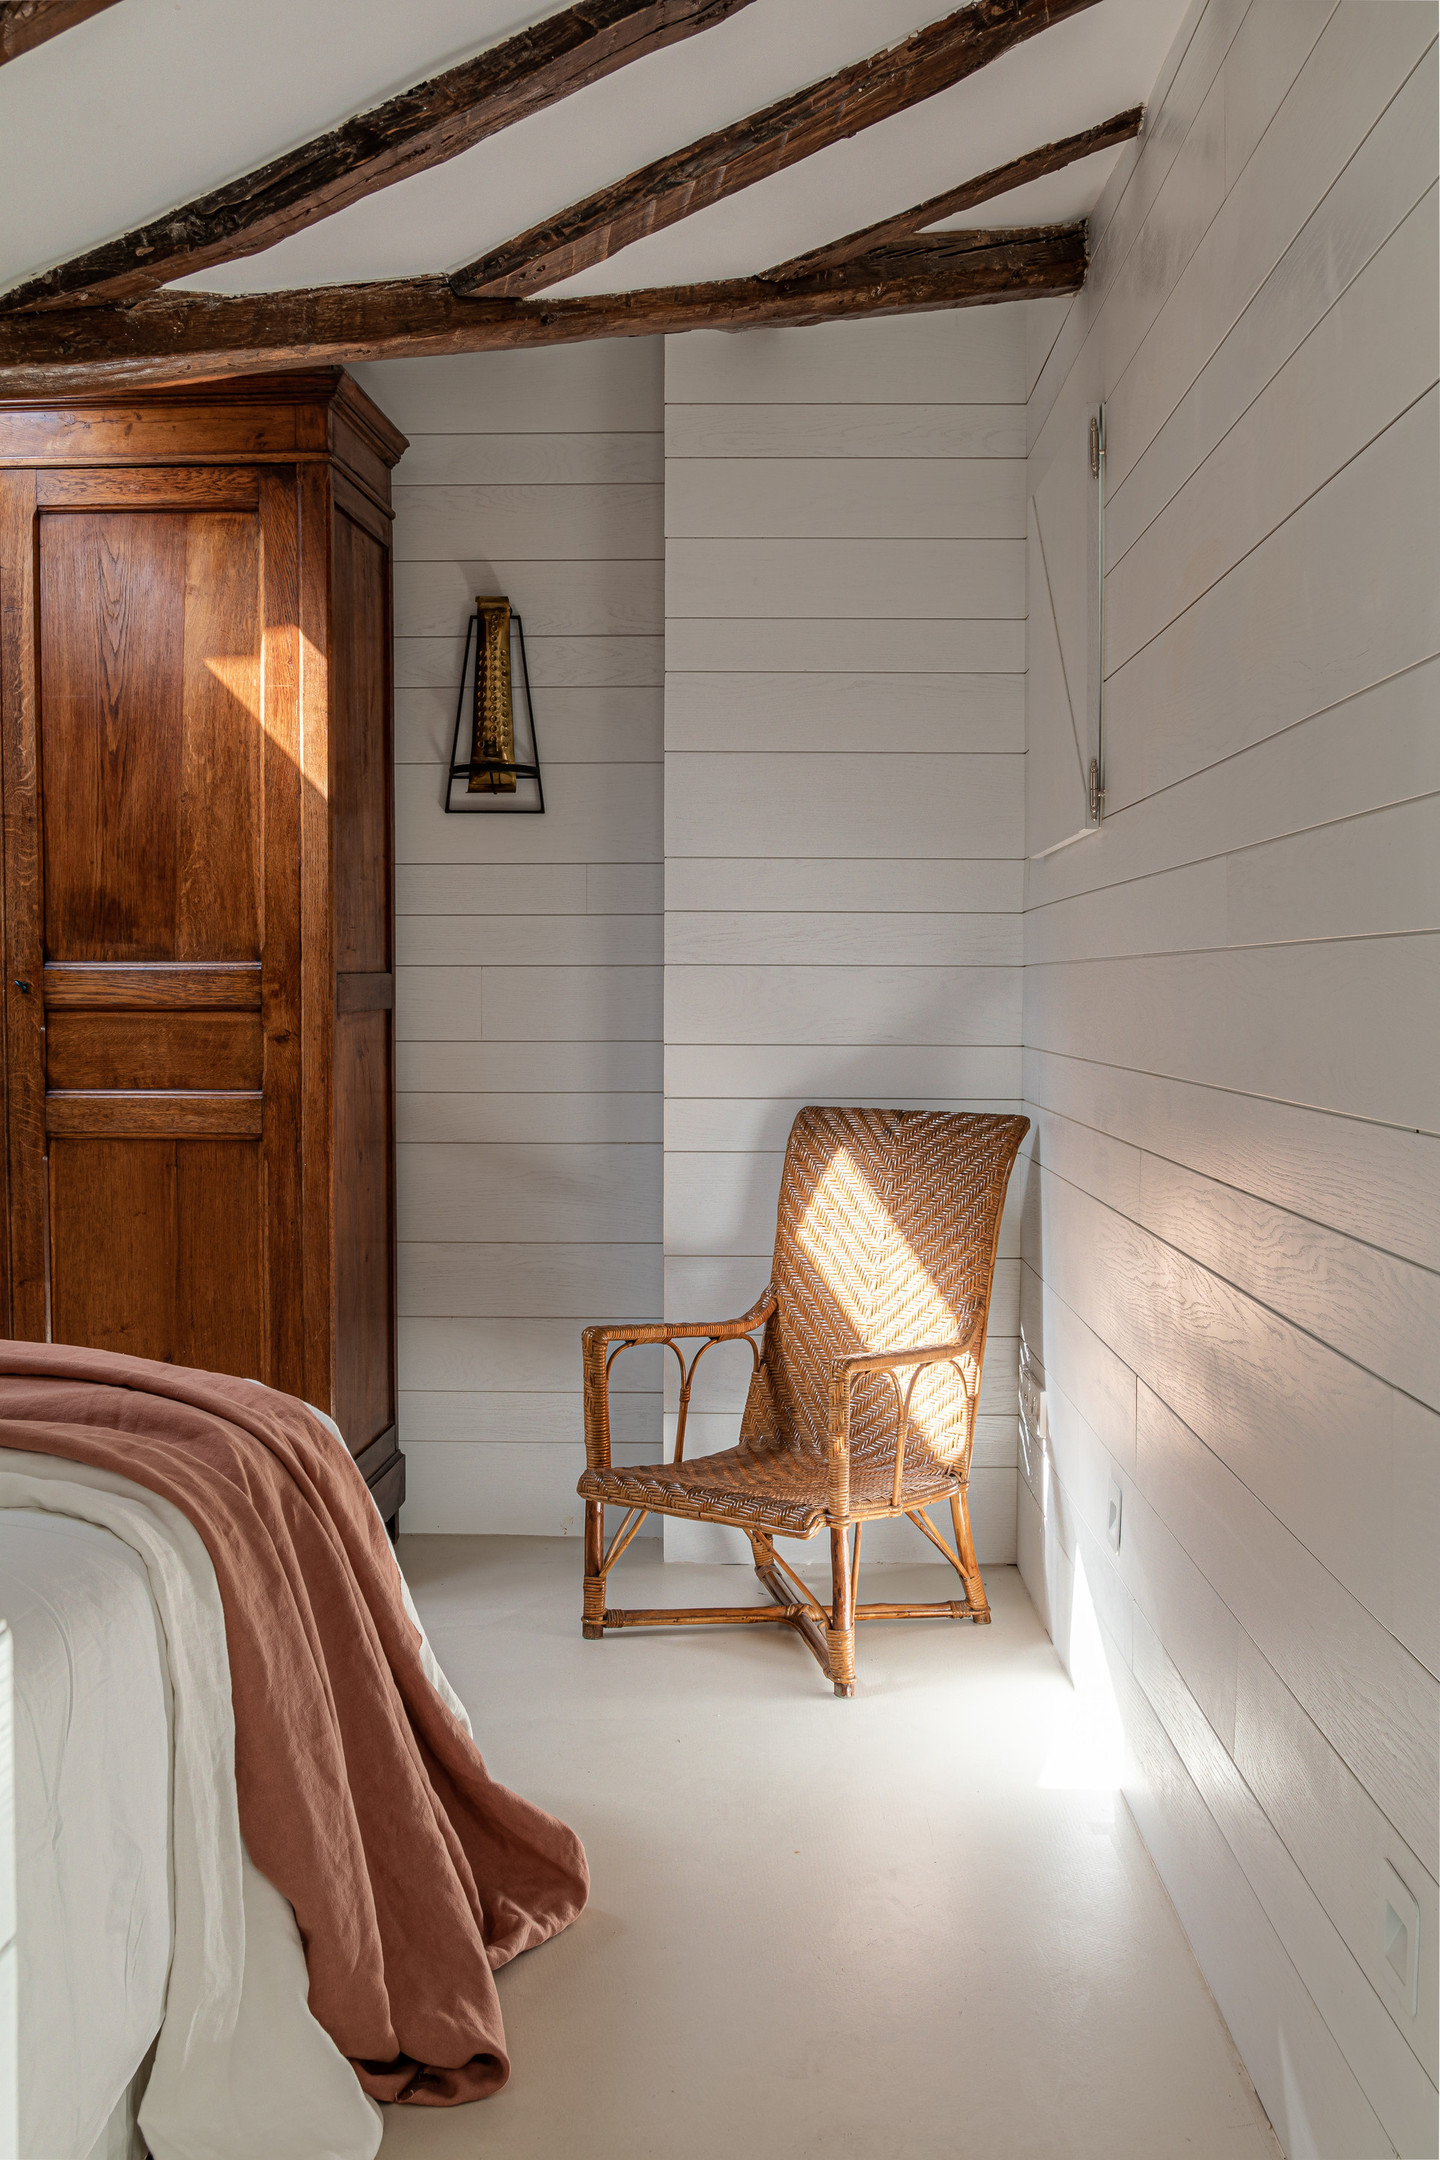 Ngoài phần dầm gỗ, NTK còn bổ sung chiếc ghế đan bằng liễu gai cùng lối trang trí cổ điển tạo nên một bầu không khí yên bình, tĩnh lặng trong một công trình nhà ở được xây lần đầu tiên vào thế kỷ 19.